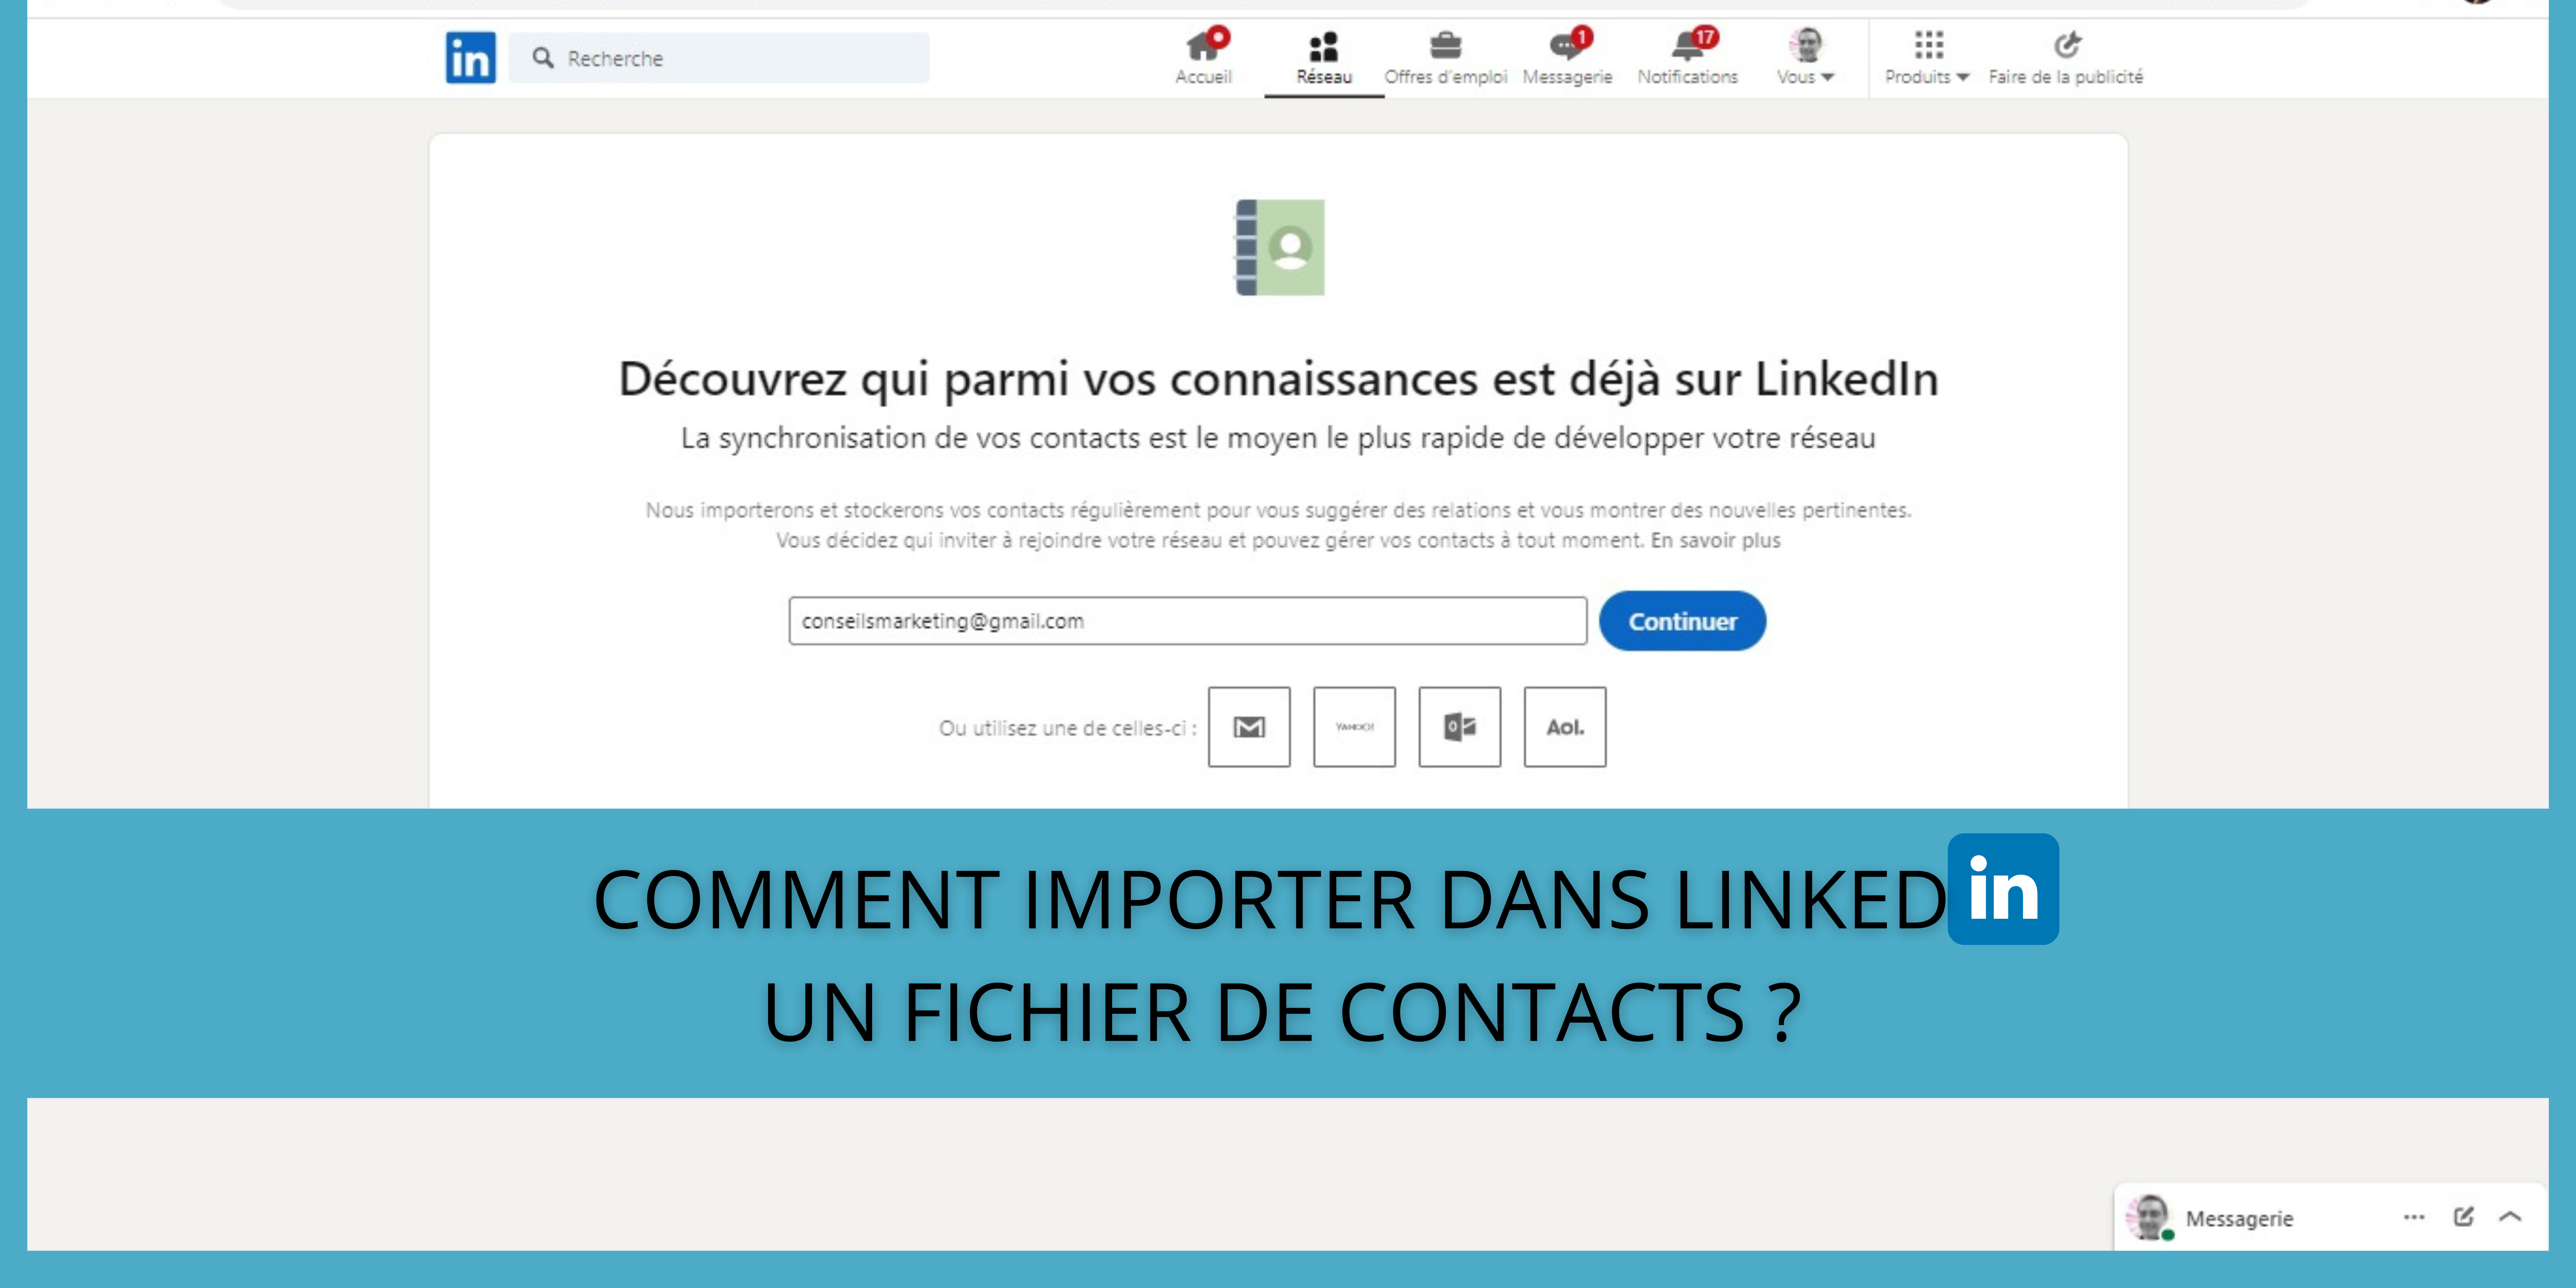 Comment importer dans LinkedIn un fichier de contacts ? 4